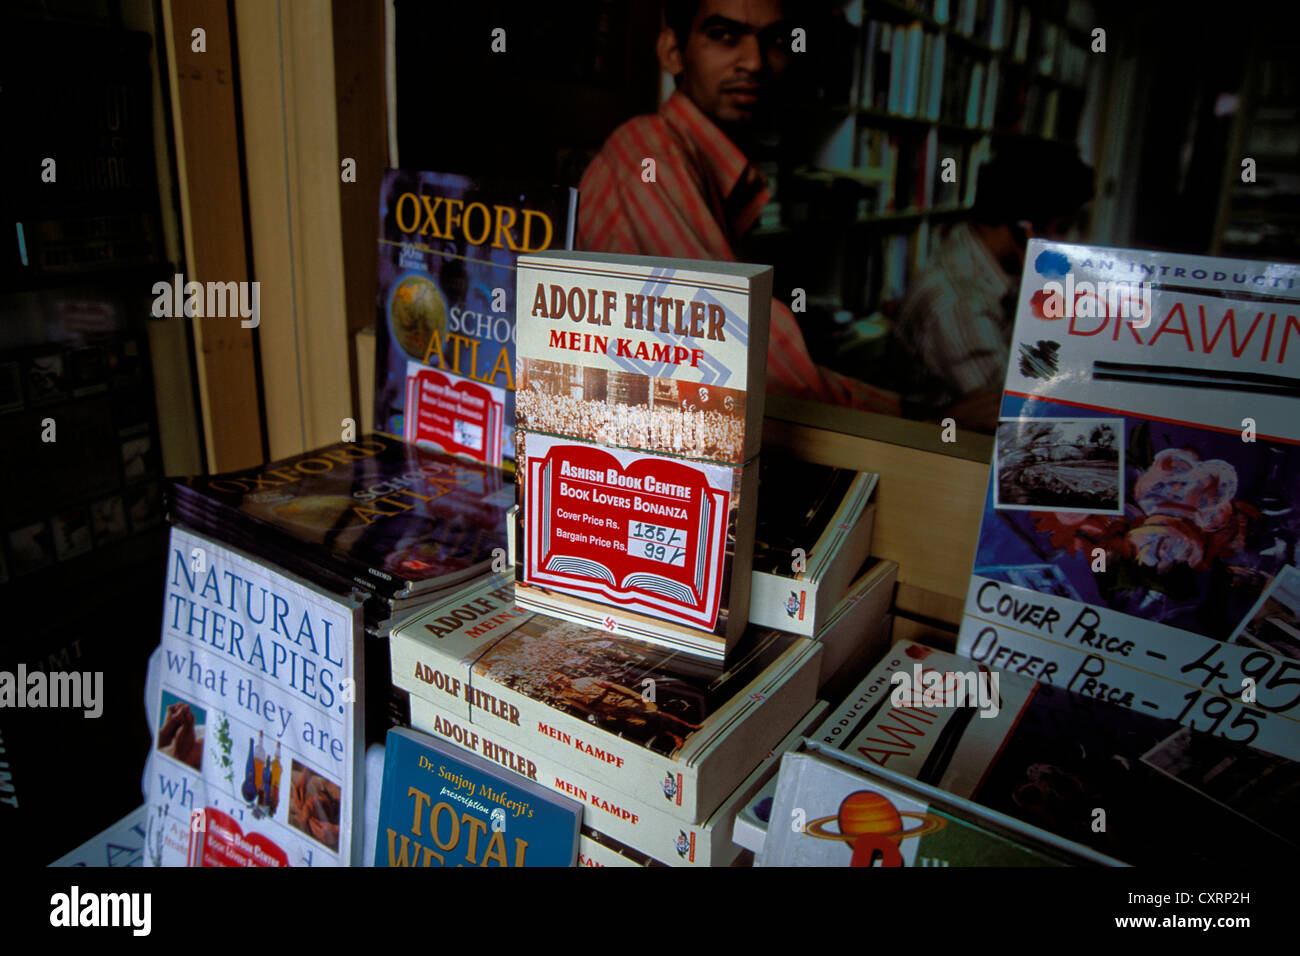 Adolf Hitler's book 'Mein Kampf' en vente à un magasin de livre, Mumbai ou Bombay, Maharashtra, Inde, Asie Banque D'Images